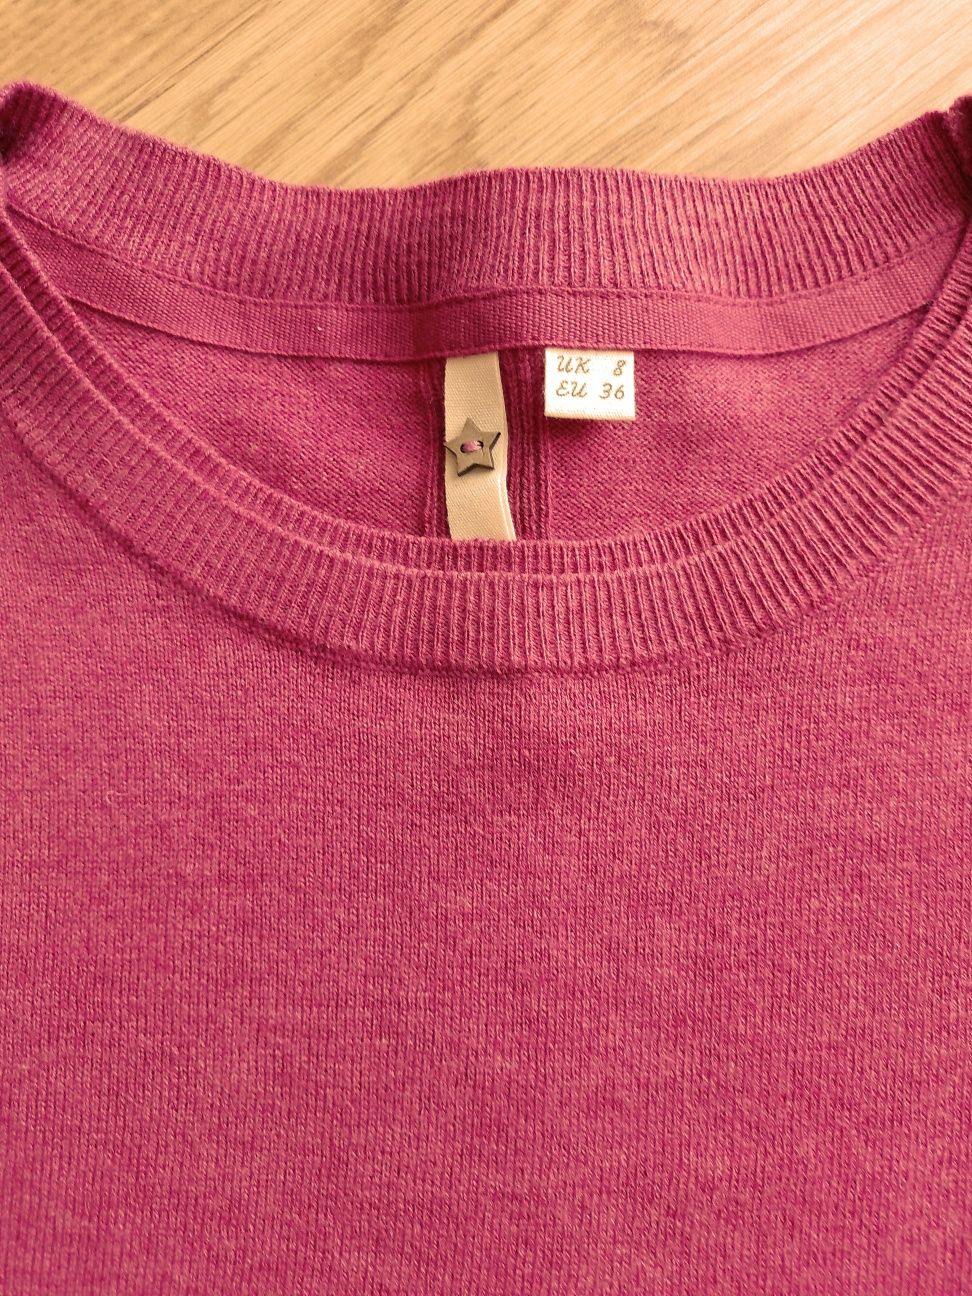 46р Новый  женский свитер  (Германия) 55%шерсть 45%котон